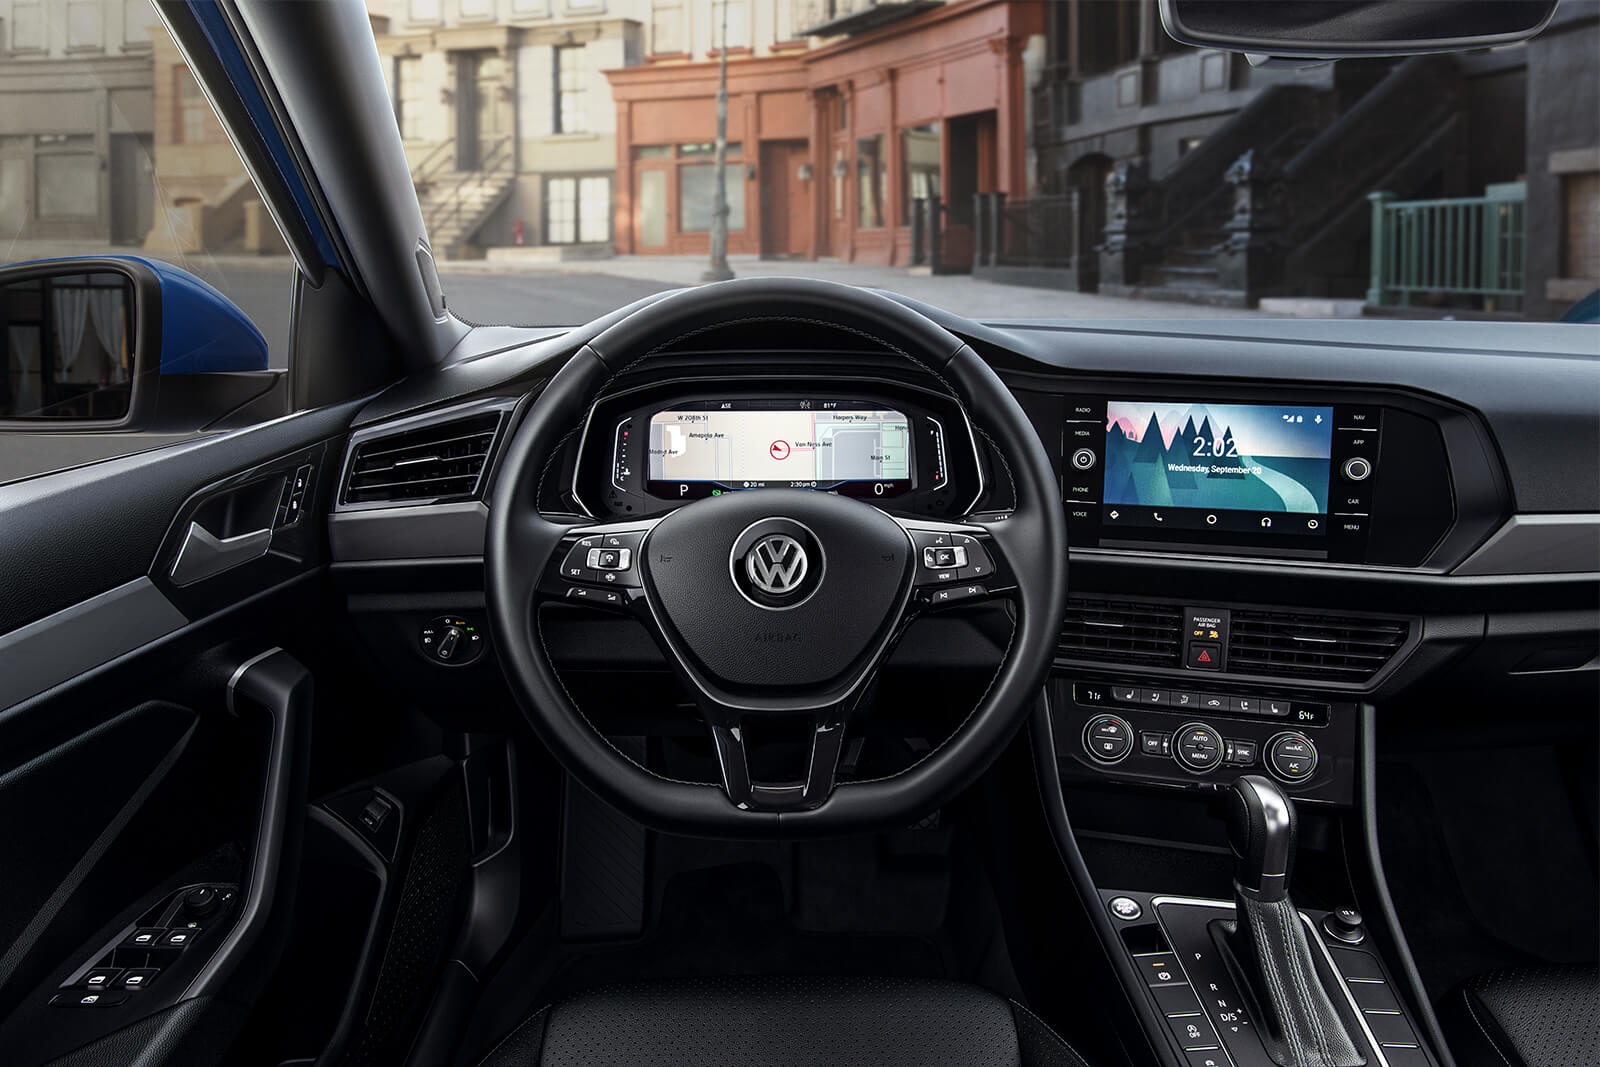 2019 Volkswagen Jetta Leasing Near College Park Md